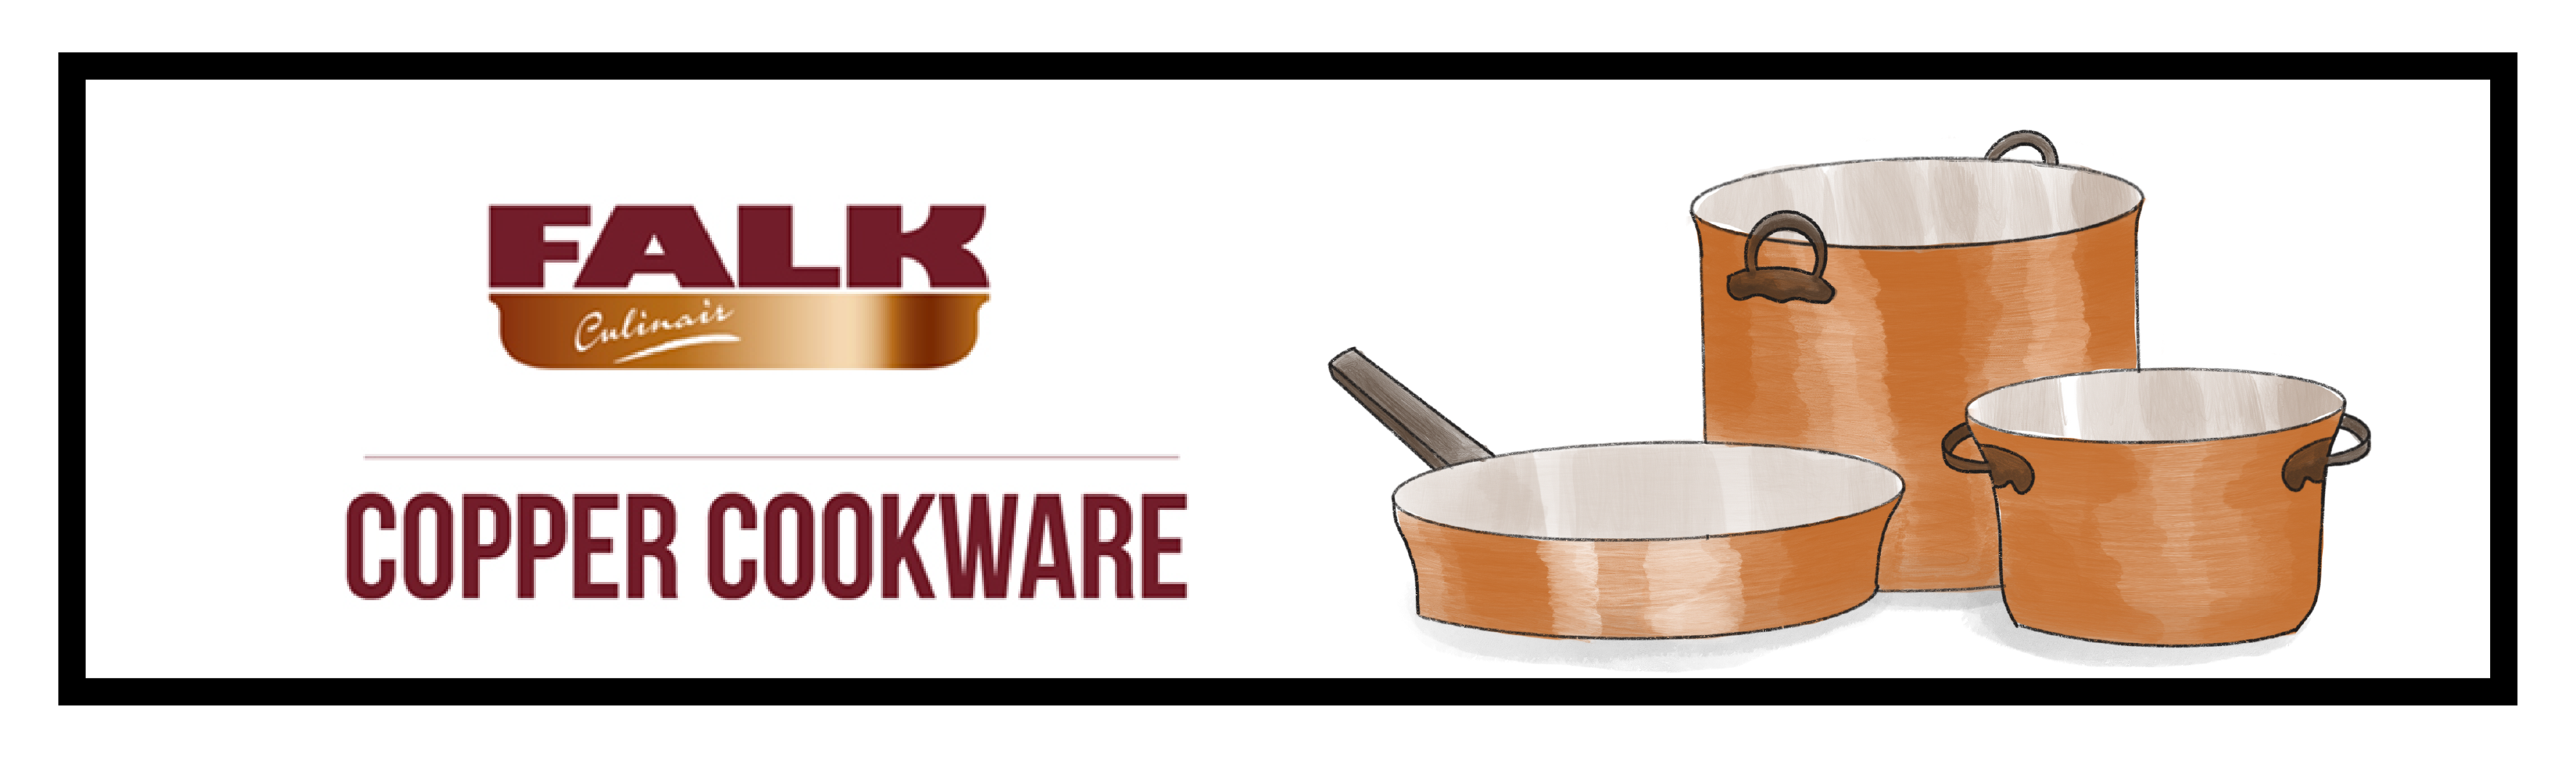 Is falk cookware good? 